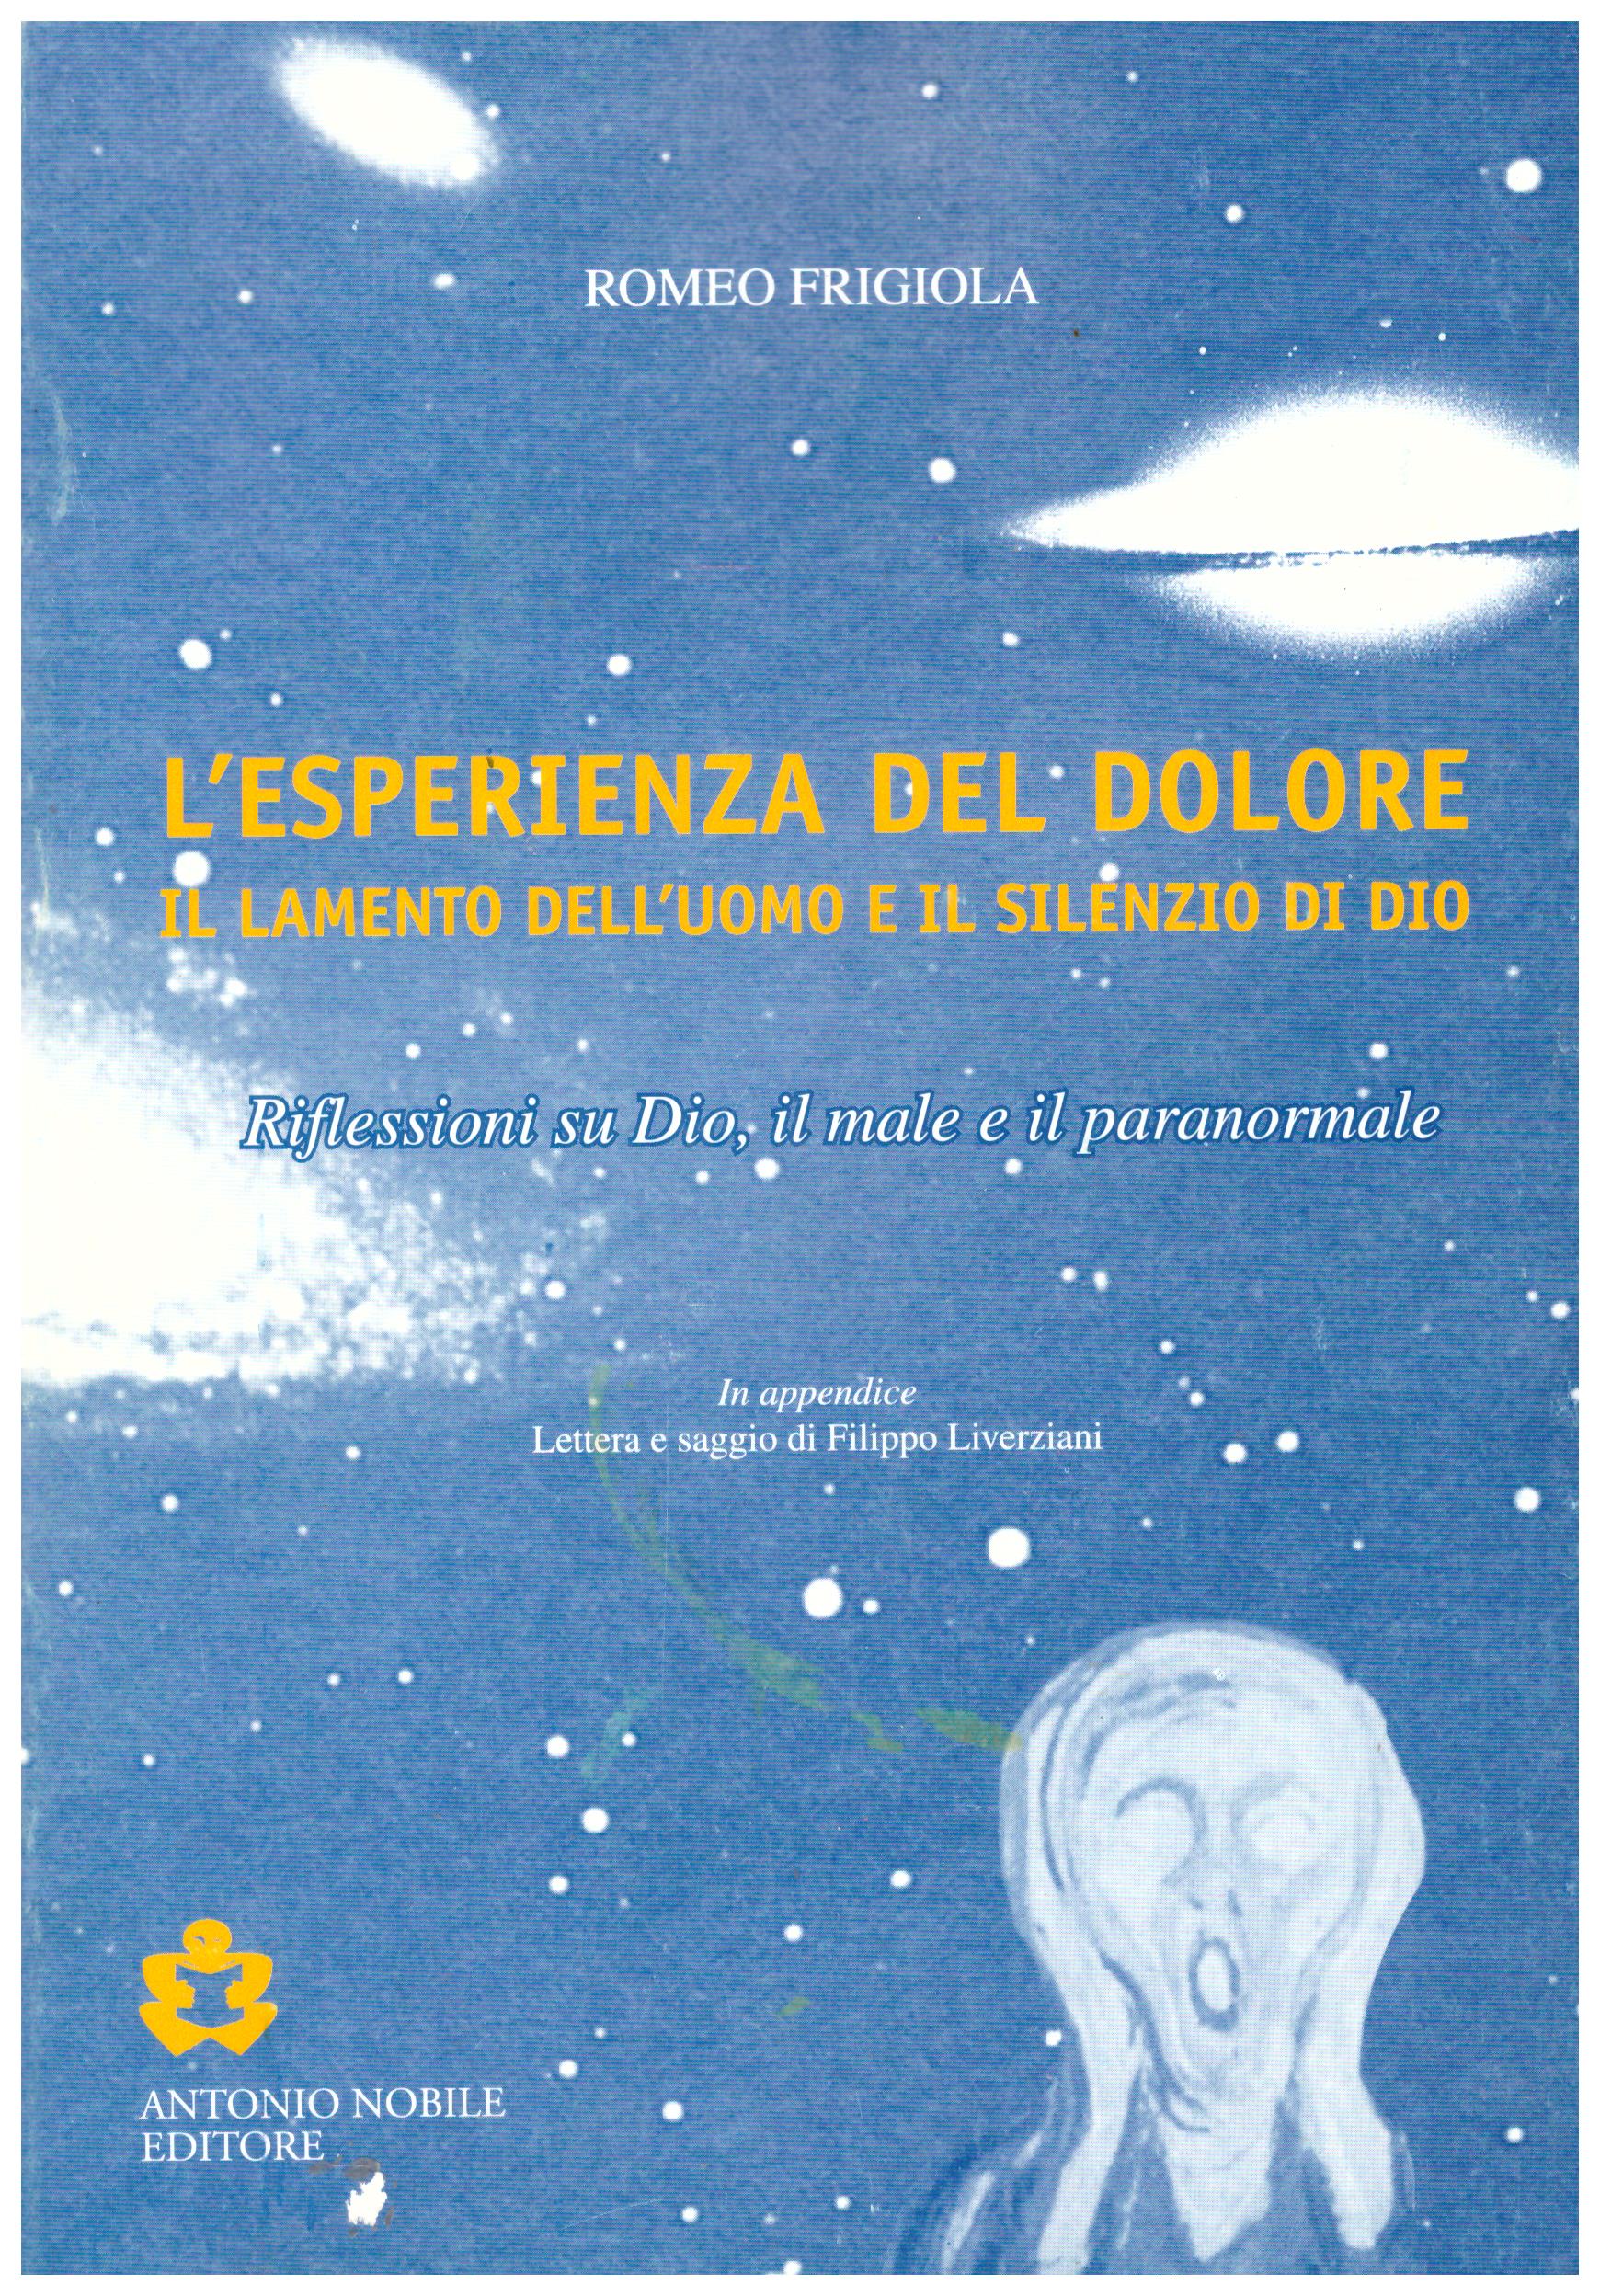 Titolo: L'esperienza del dolore, il lamento dell'uomo e il silenzio di Dio Autore: Romeo Frigiola Editore: grafiche Paternoster, Matera 1999